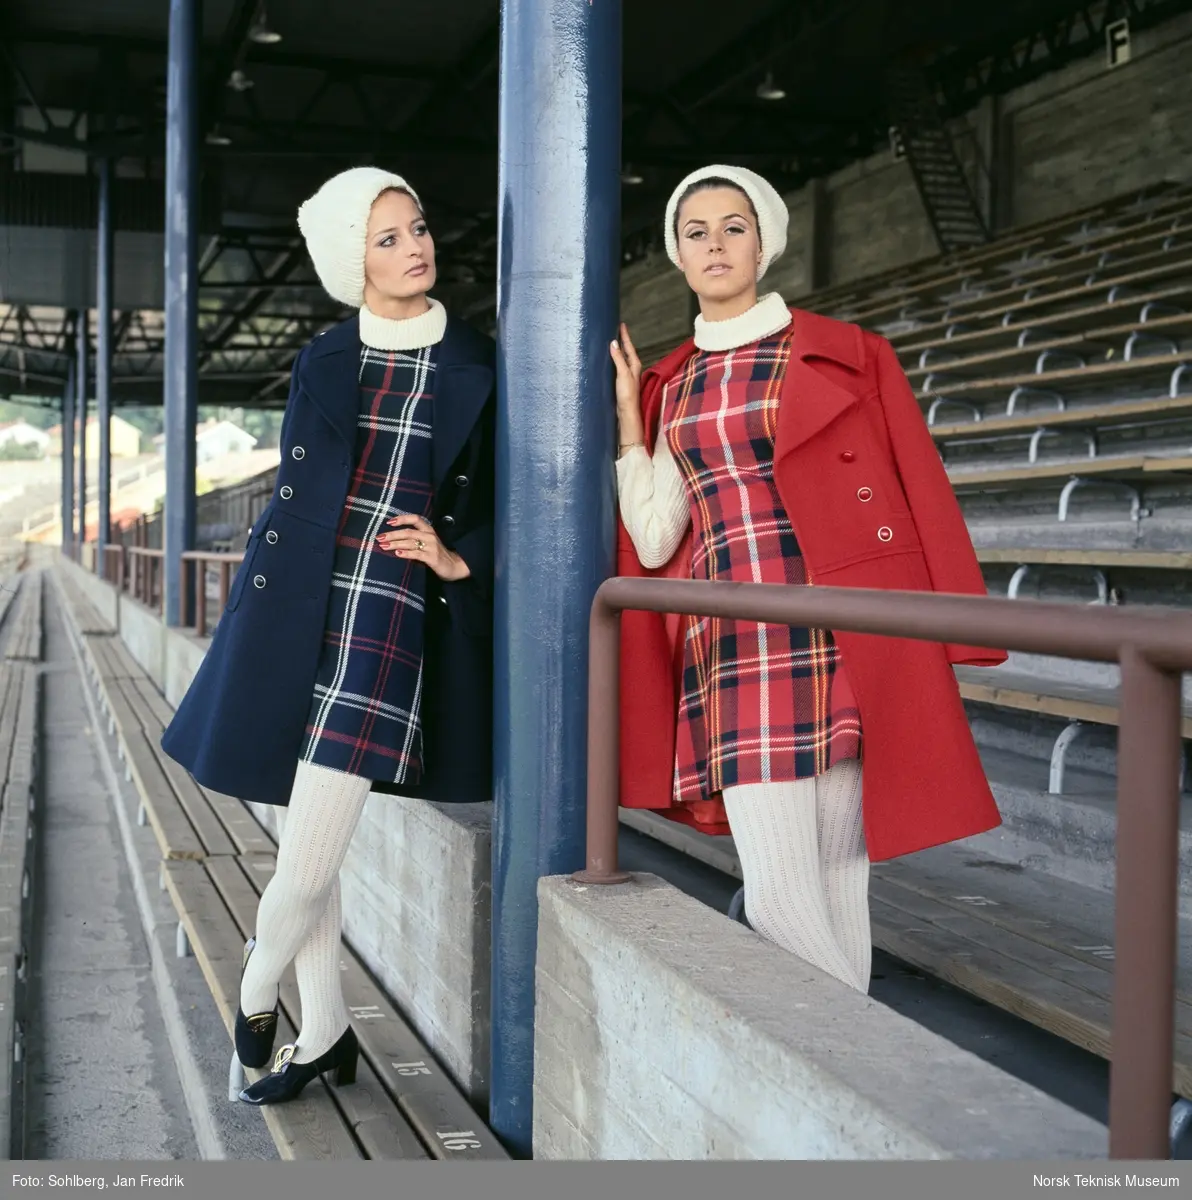 Motebilde i farger. To kvinnelige modeller i blå og røde antrekk med matchende kåper og skotskrutete kjoler, hvite strømper og hvite luer. Poserer på tribune på idrettsplass. Motivet er en del av en serie der noen er publisert i ukebladet Det Nye 1969, nr. 38 med overskriften "Kåper i høst".